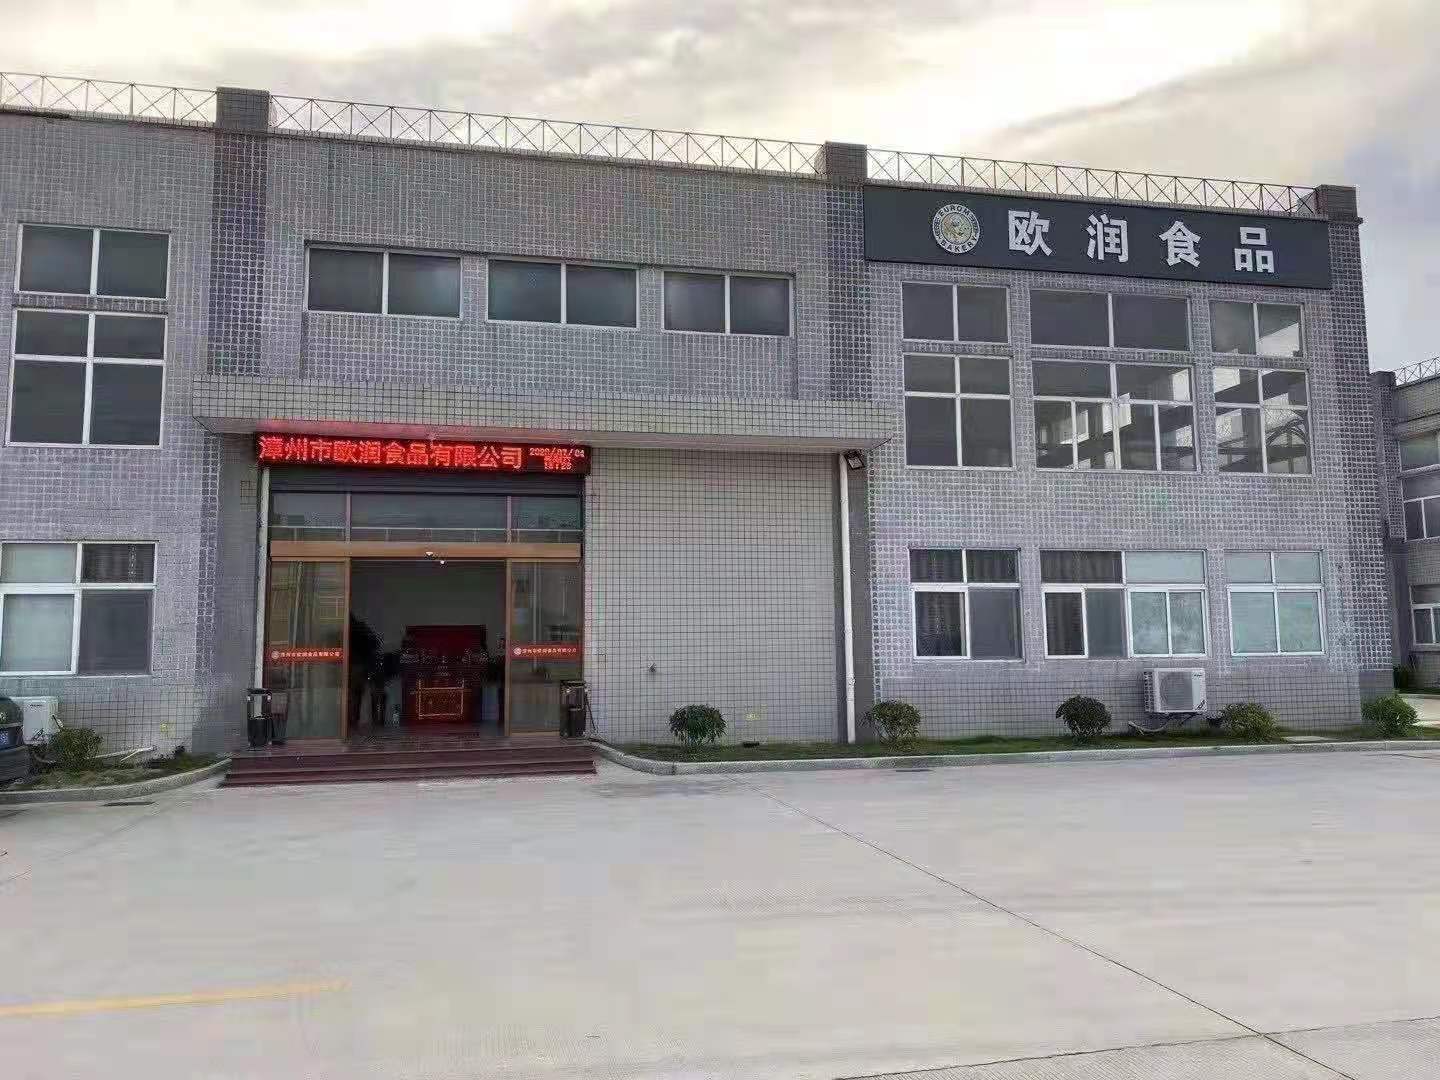     Zhangzhou Ourun Food Co., Ltd